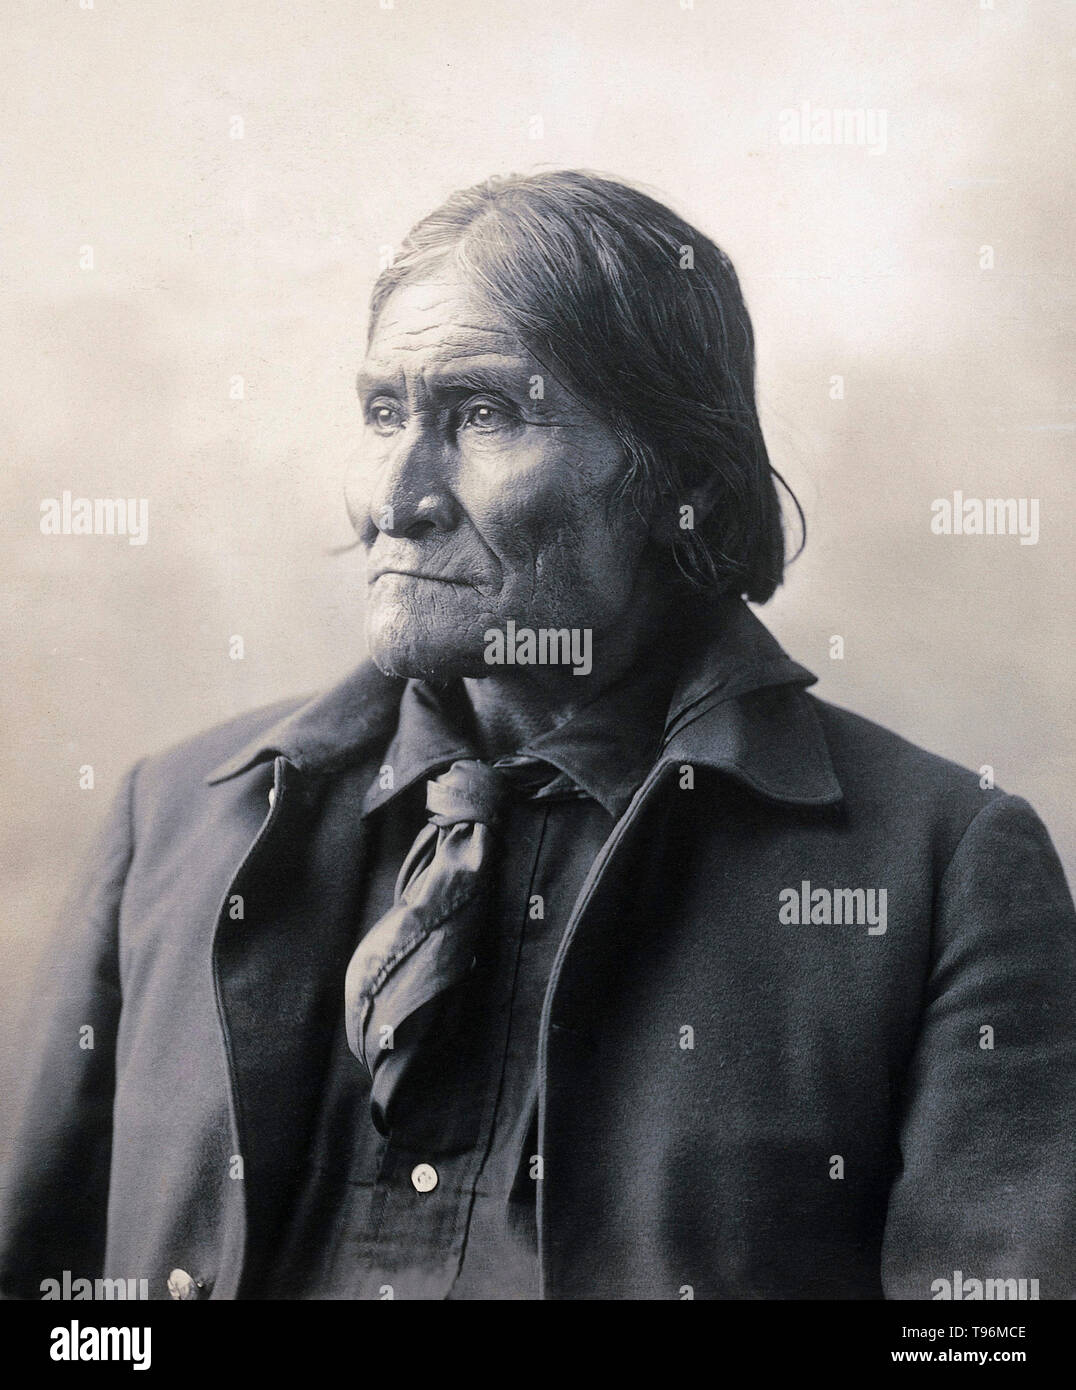 Geronimo (1829-1909) war ein prominenter Führer und Medizin Mann von der Bedonkohe Band des Apache Tribe. Von 1850 bis Geronimo 1886 gemeinsam mit Mitgliedern der drei anderen Chiricahua Apache Bands (die Tchihende, die Tsokanende und die nednhi) zahlreiche Überfälle zu transportieren Widerstand gegen die US-amerikanischen und mexikanischen militärischen Kampagnen im Norden Mexikos Bundesstaaten Chihuahua und Sonora und im Südwesten der amerikanischen Gebiete von New Mexico und Arizona. Stockfoto